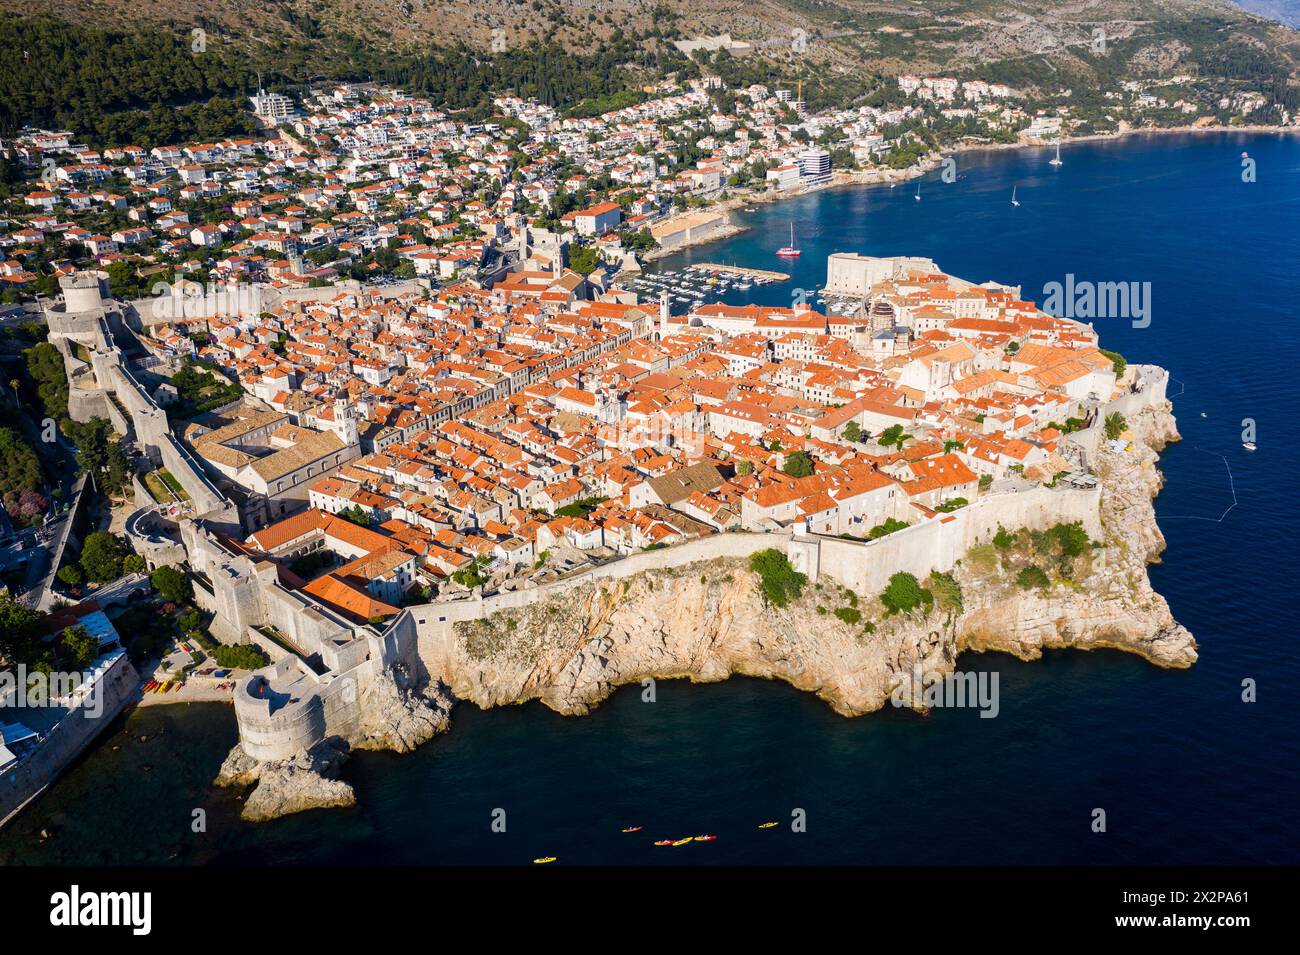 Dubrovnik, Kroatien: Luftlinie der berühmten mittelalterlichen Altstadt und des Hafens von Dubrovnik mit ihren befestigten Mauern und dem Turm an der Adria in Kroatien auf einer Stockfoto